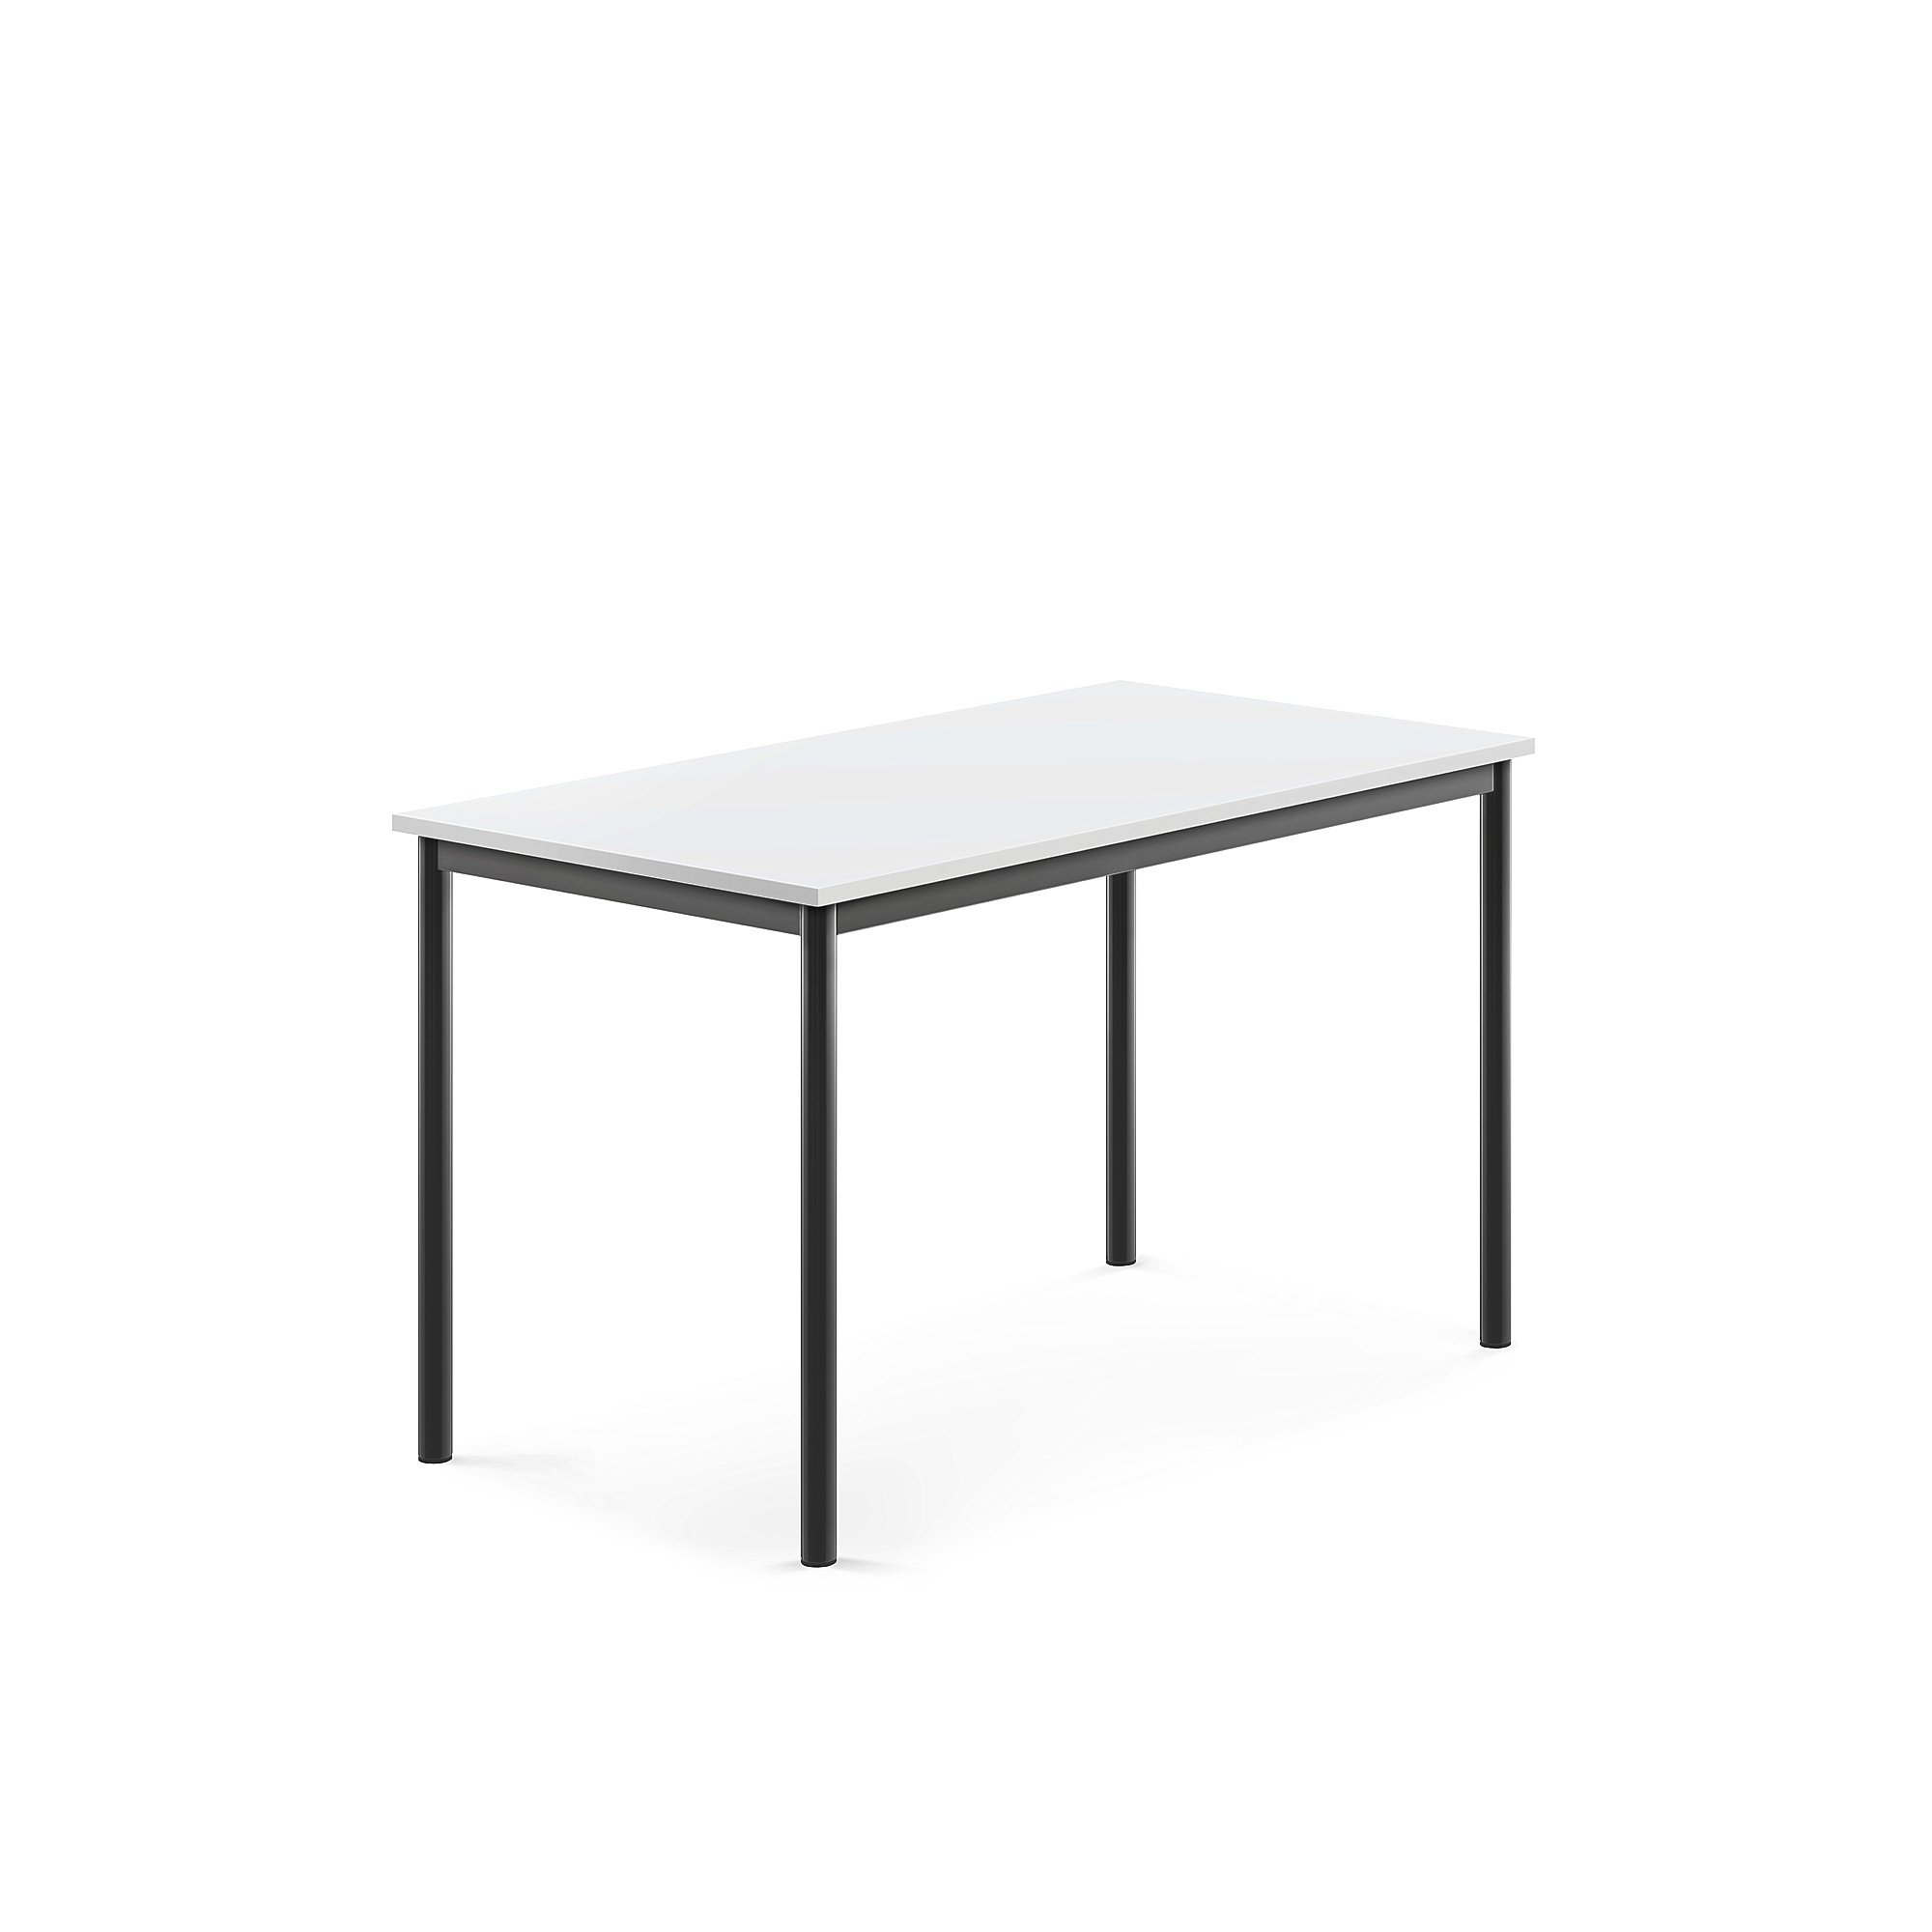 Stůl SONITUS, 1200x700x720 mm, antracitově šedé nohy, HPL deska tlumící hluk, bílá